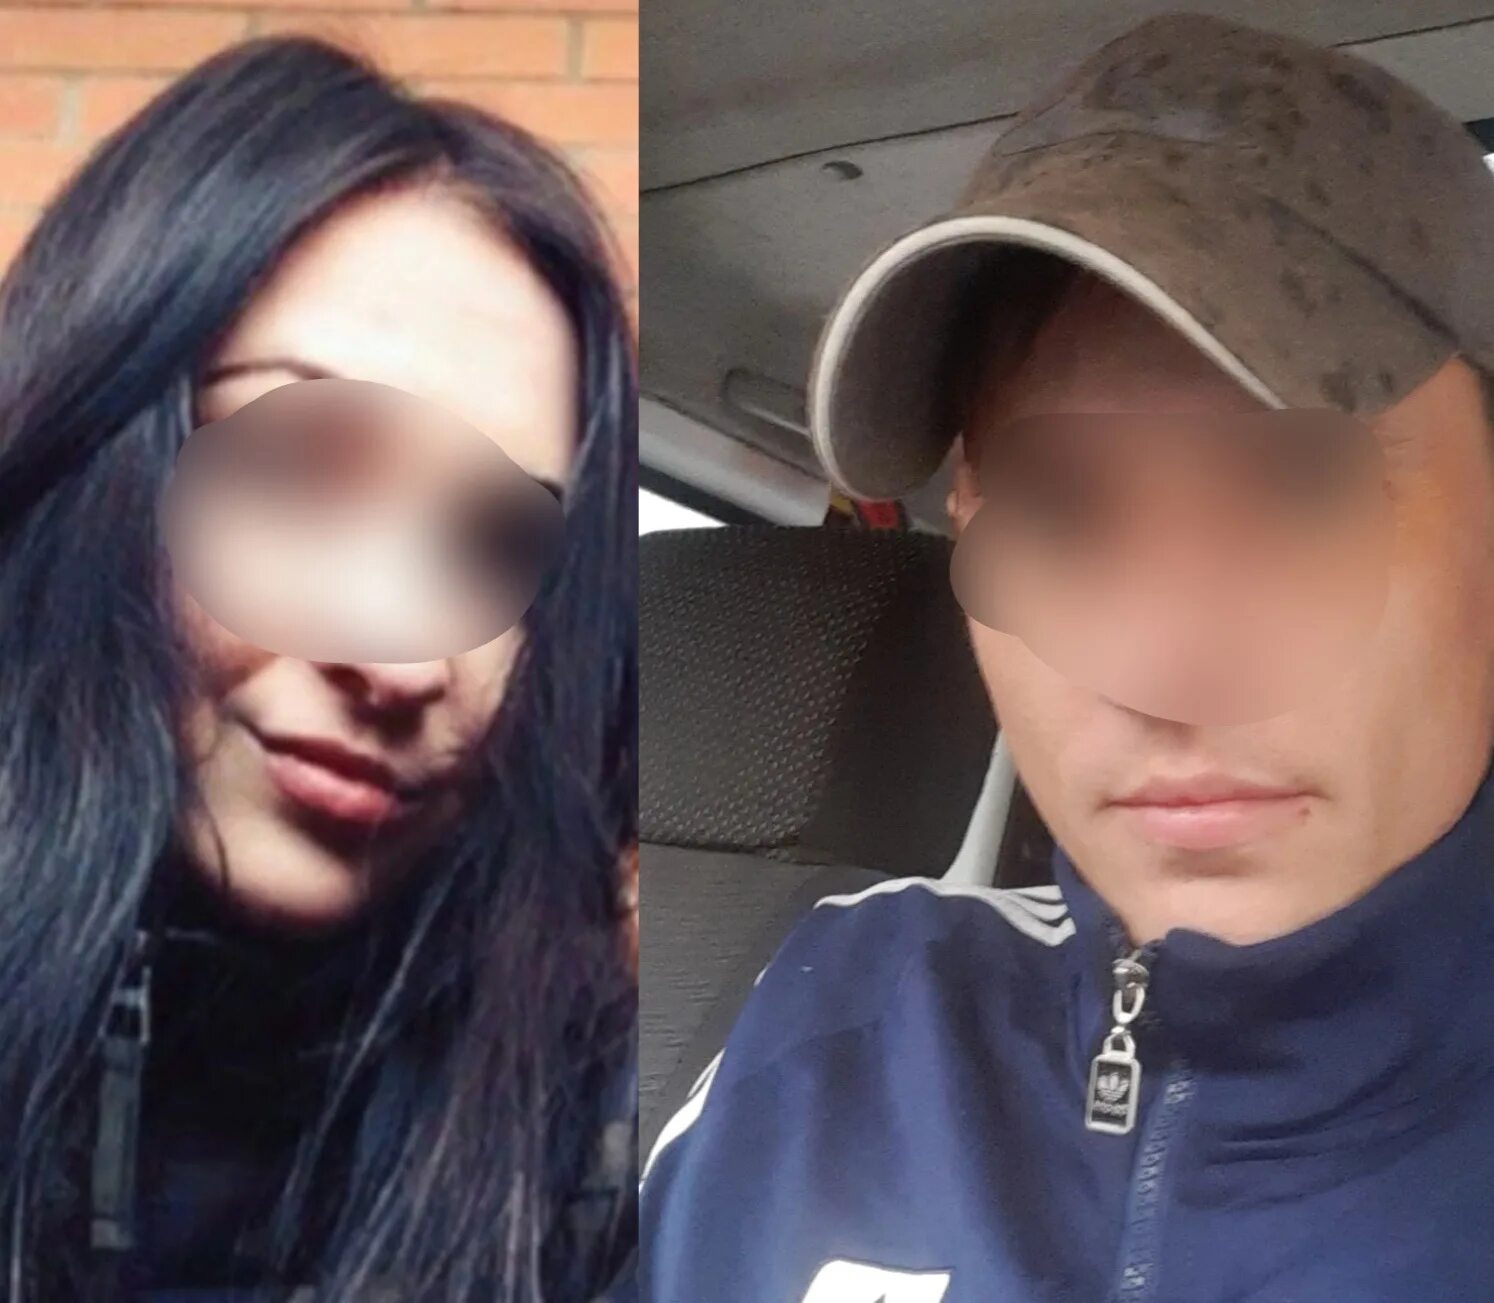 Умерший бойфренд. В Ярославле задержана девушка. В Ярославле задержали 20 летнюю девушку. В Ярославле задержали 19 летнюю девушку.